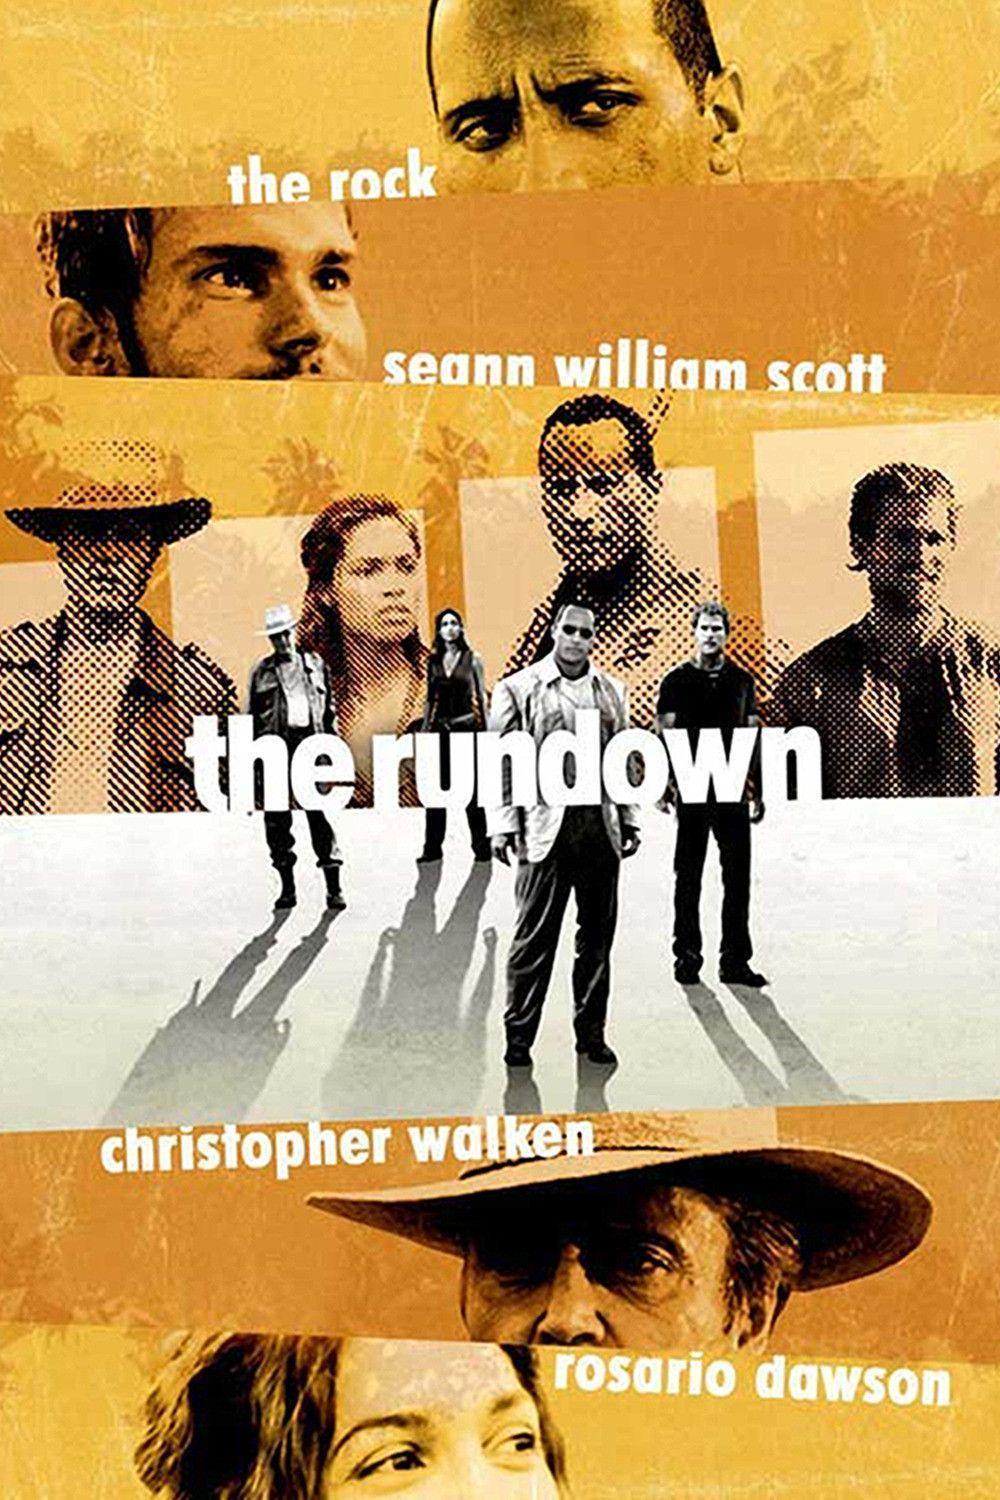 the rundown poster 2 Rundown Image, Picture, Photo, Icon